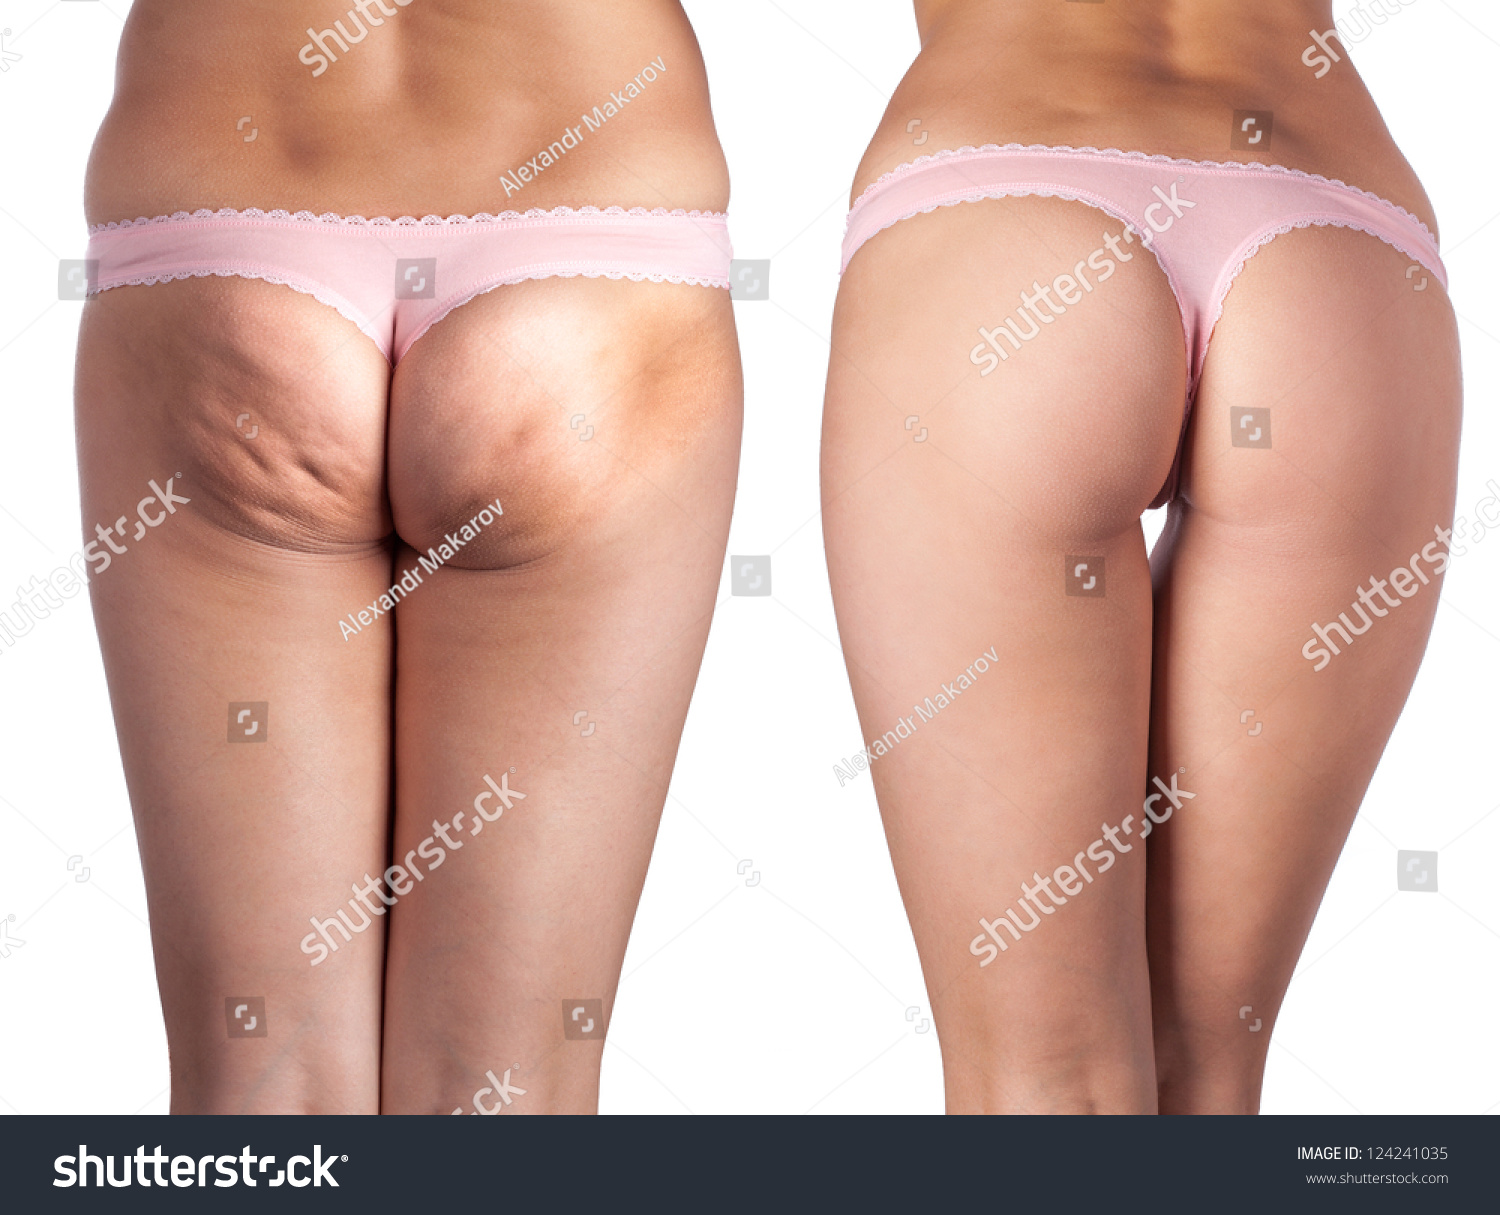 Women S Butt Pics 93